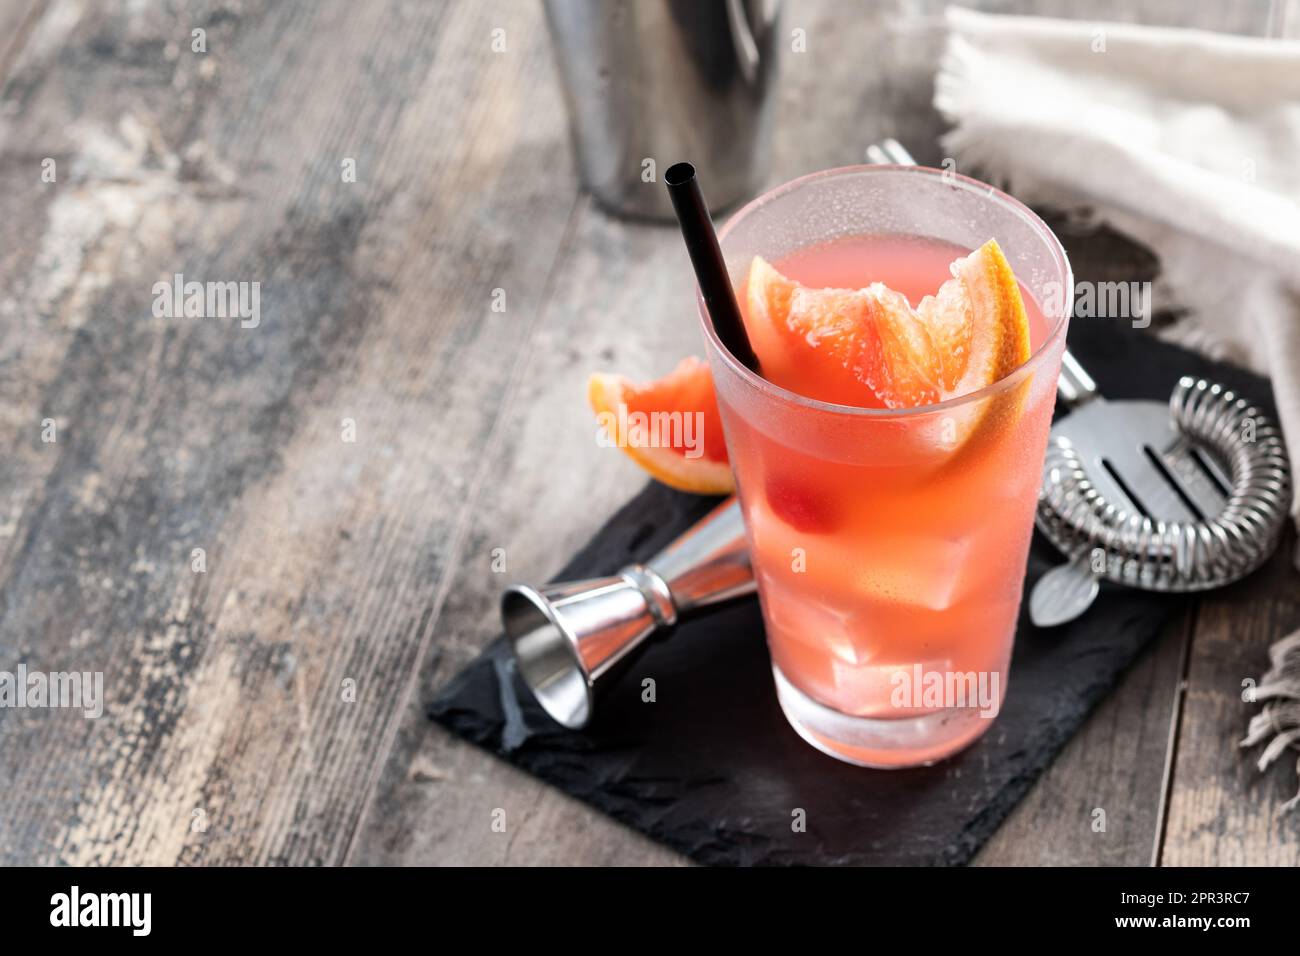 Cocktail de brise marine en verre sur une table en bois Banque D'Images